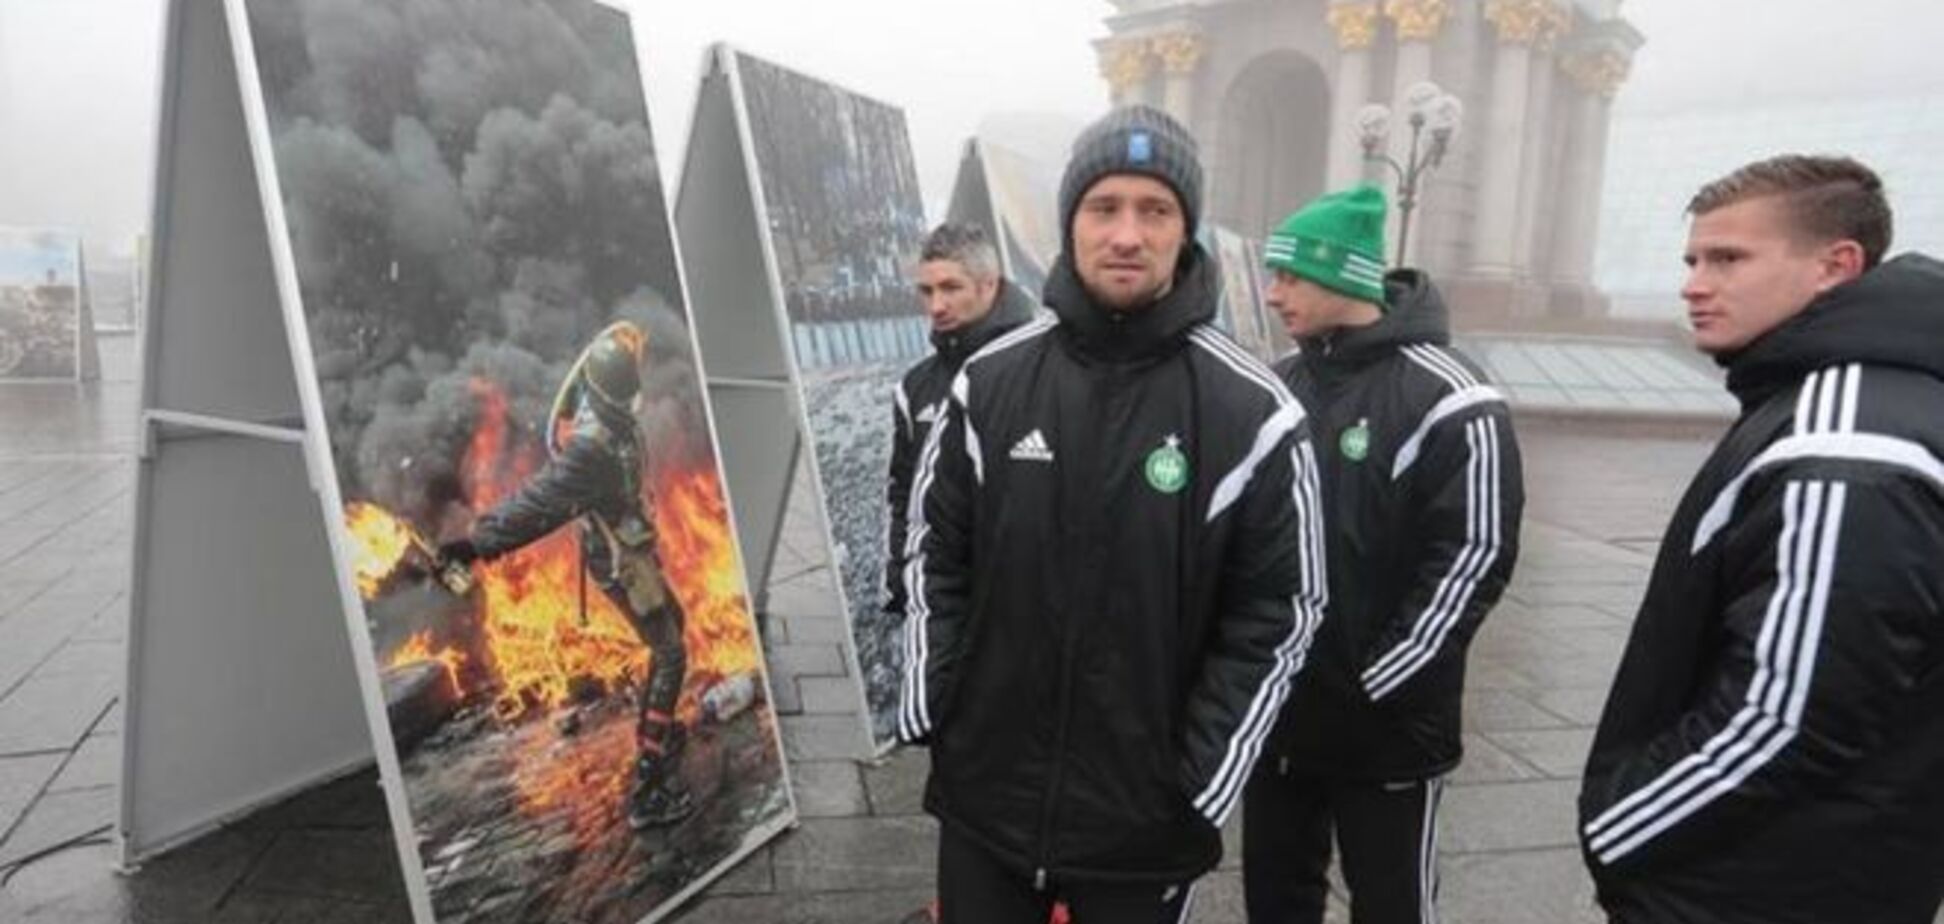 Французские футболисты посетили революционный Майдан: опубликовано фото и видео